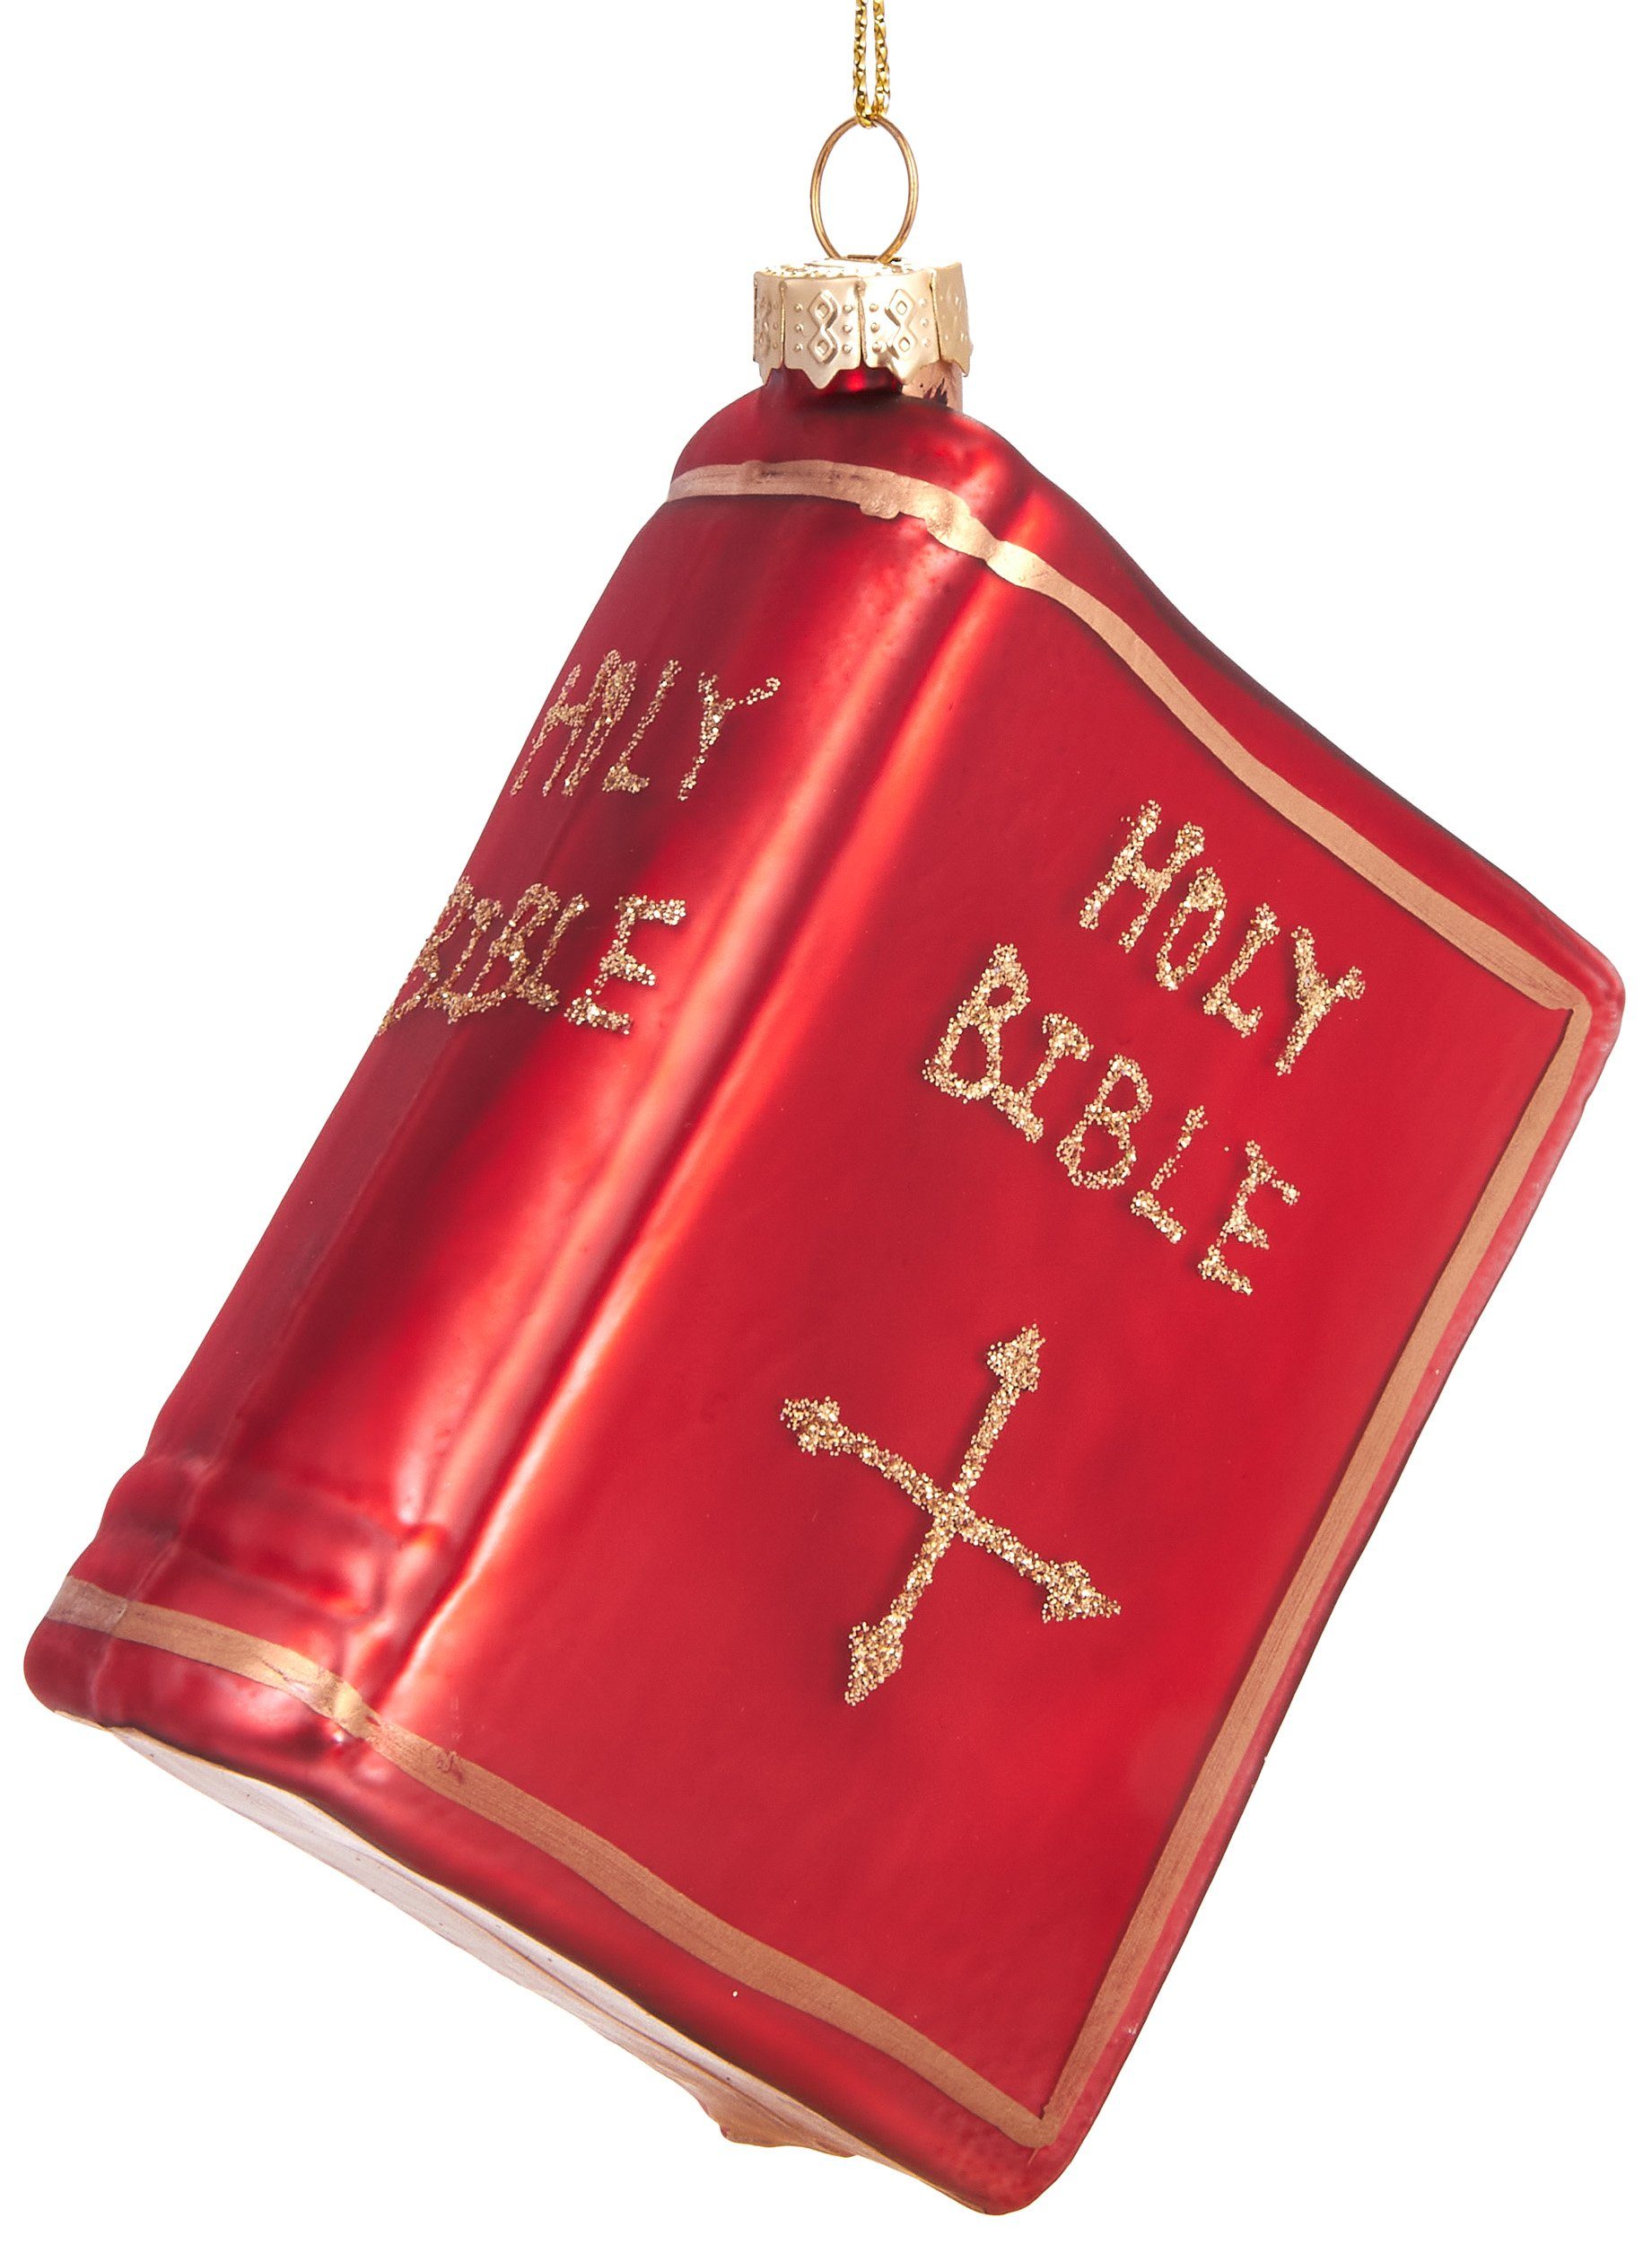 BRUBAKER Christbaumschmuck Mundgeblasene Weihnachtskugel Rote Bibel, Weihnachtsdekoration in kirchlicher Tradition aus Glas, handbemalt - 9 cm